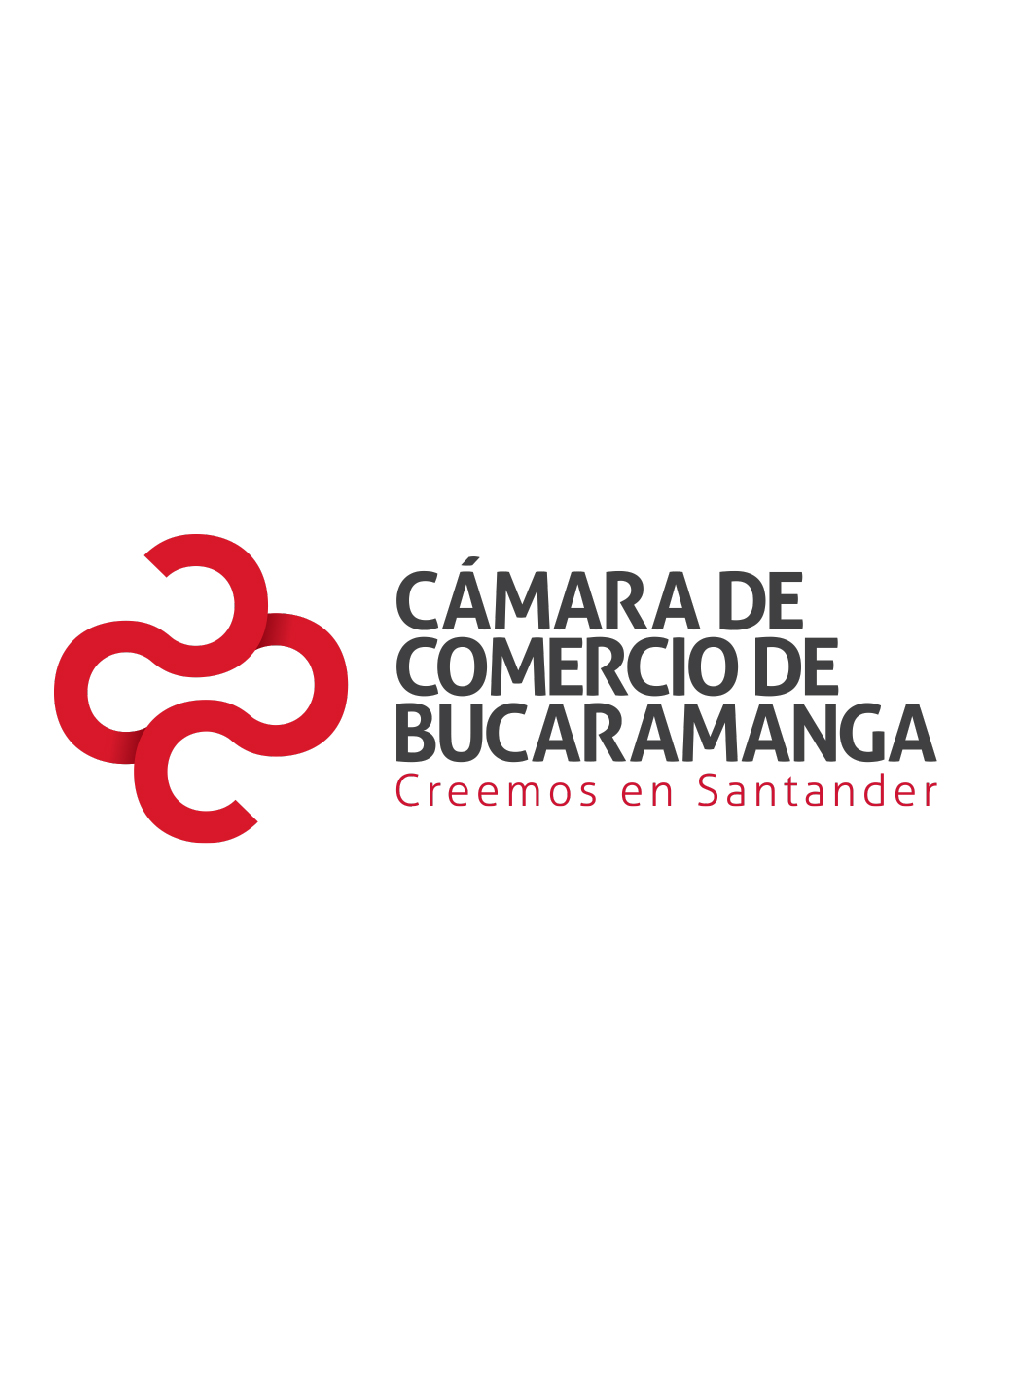 Nuevas empresas constituidas Santander 2010 - I semestre